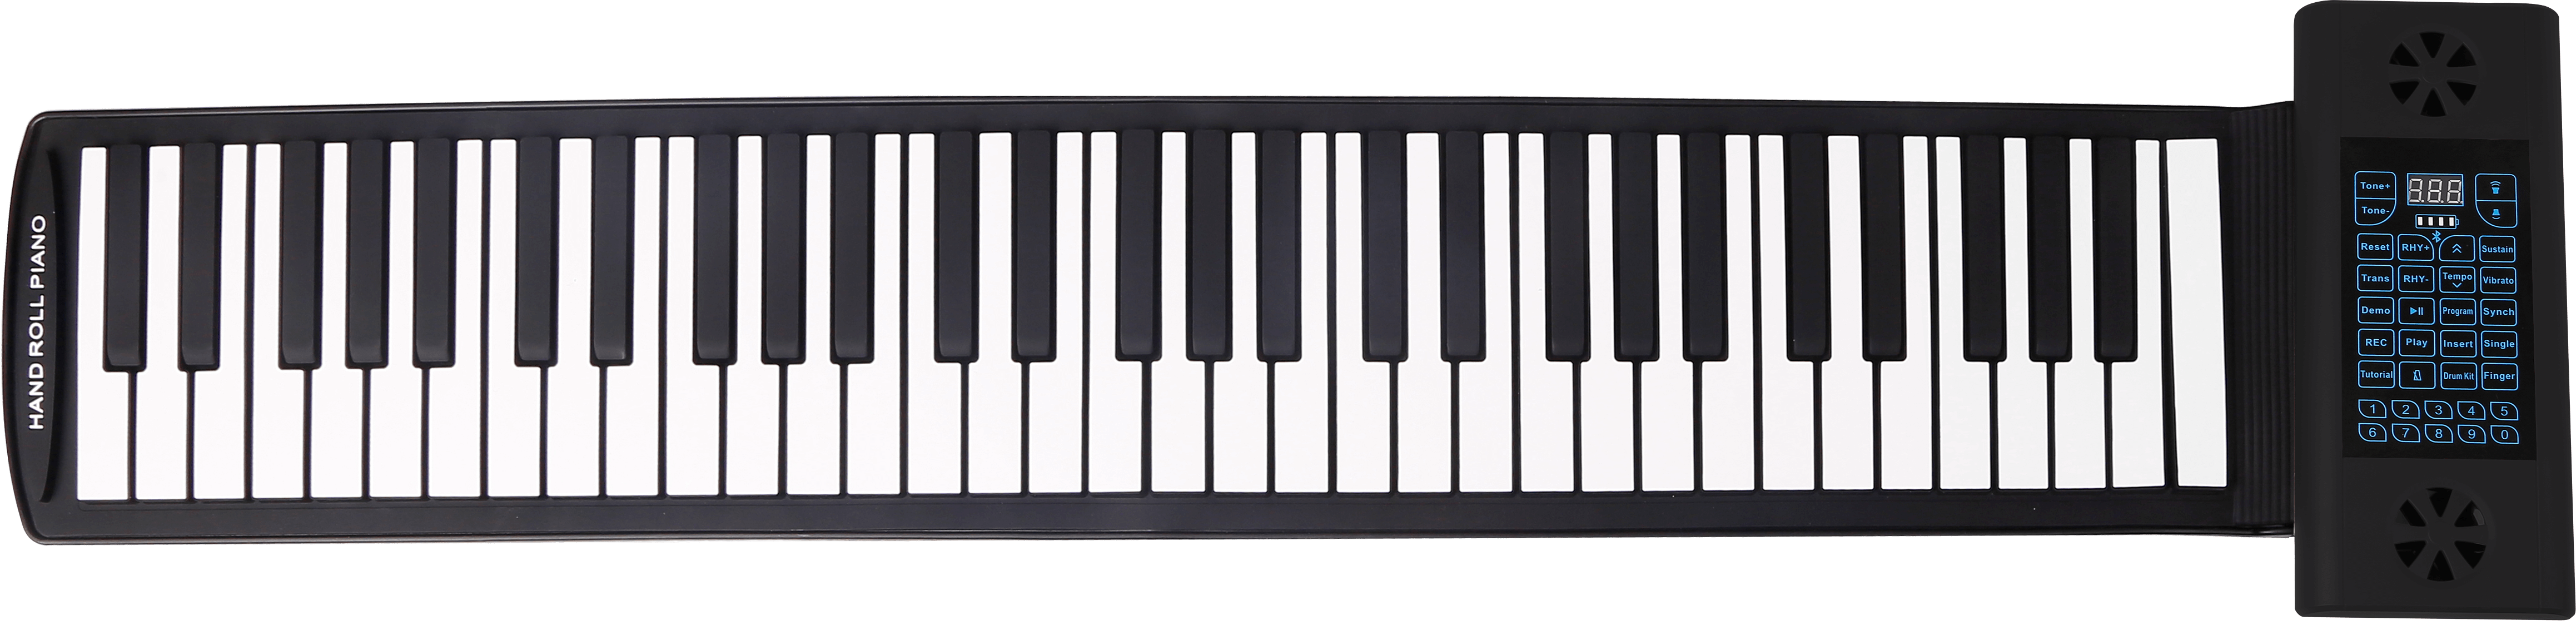 силиконовое пианино с 61 клавишами